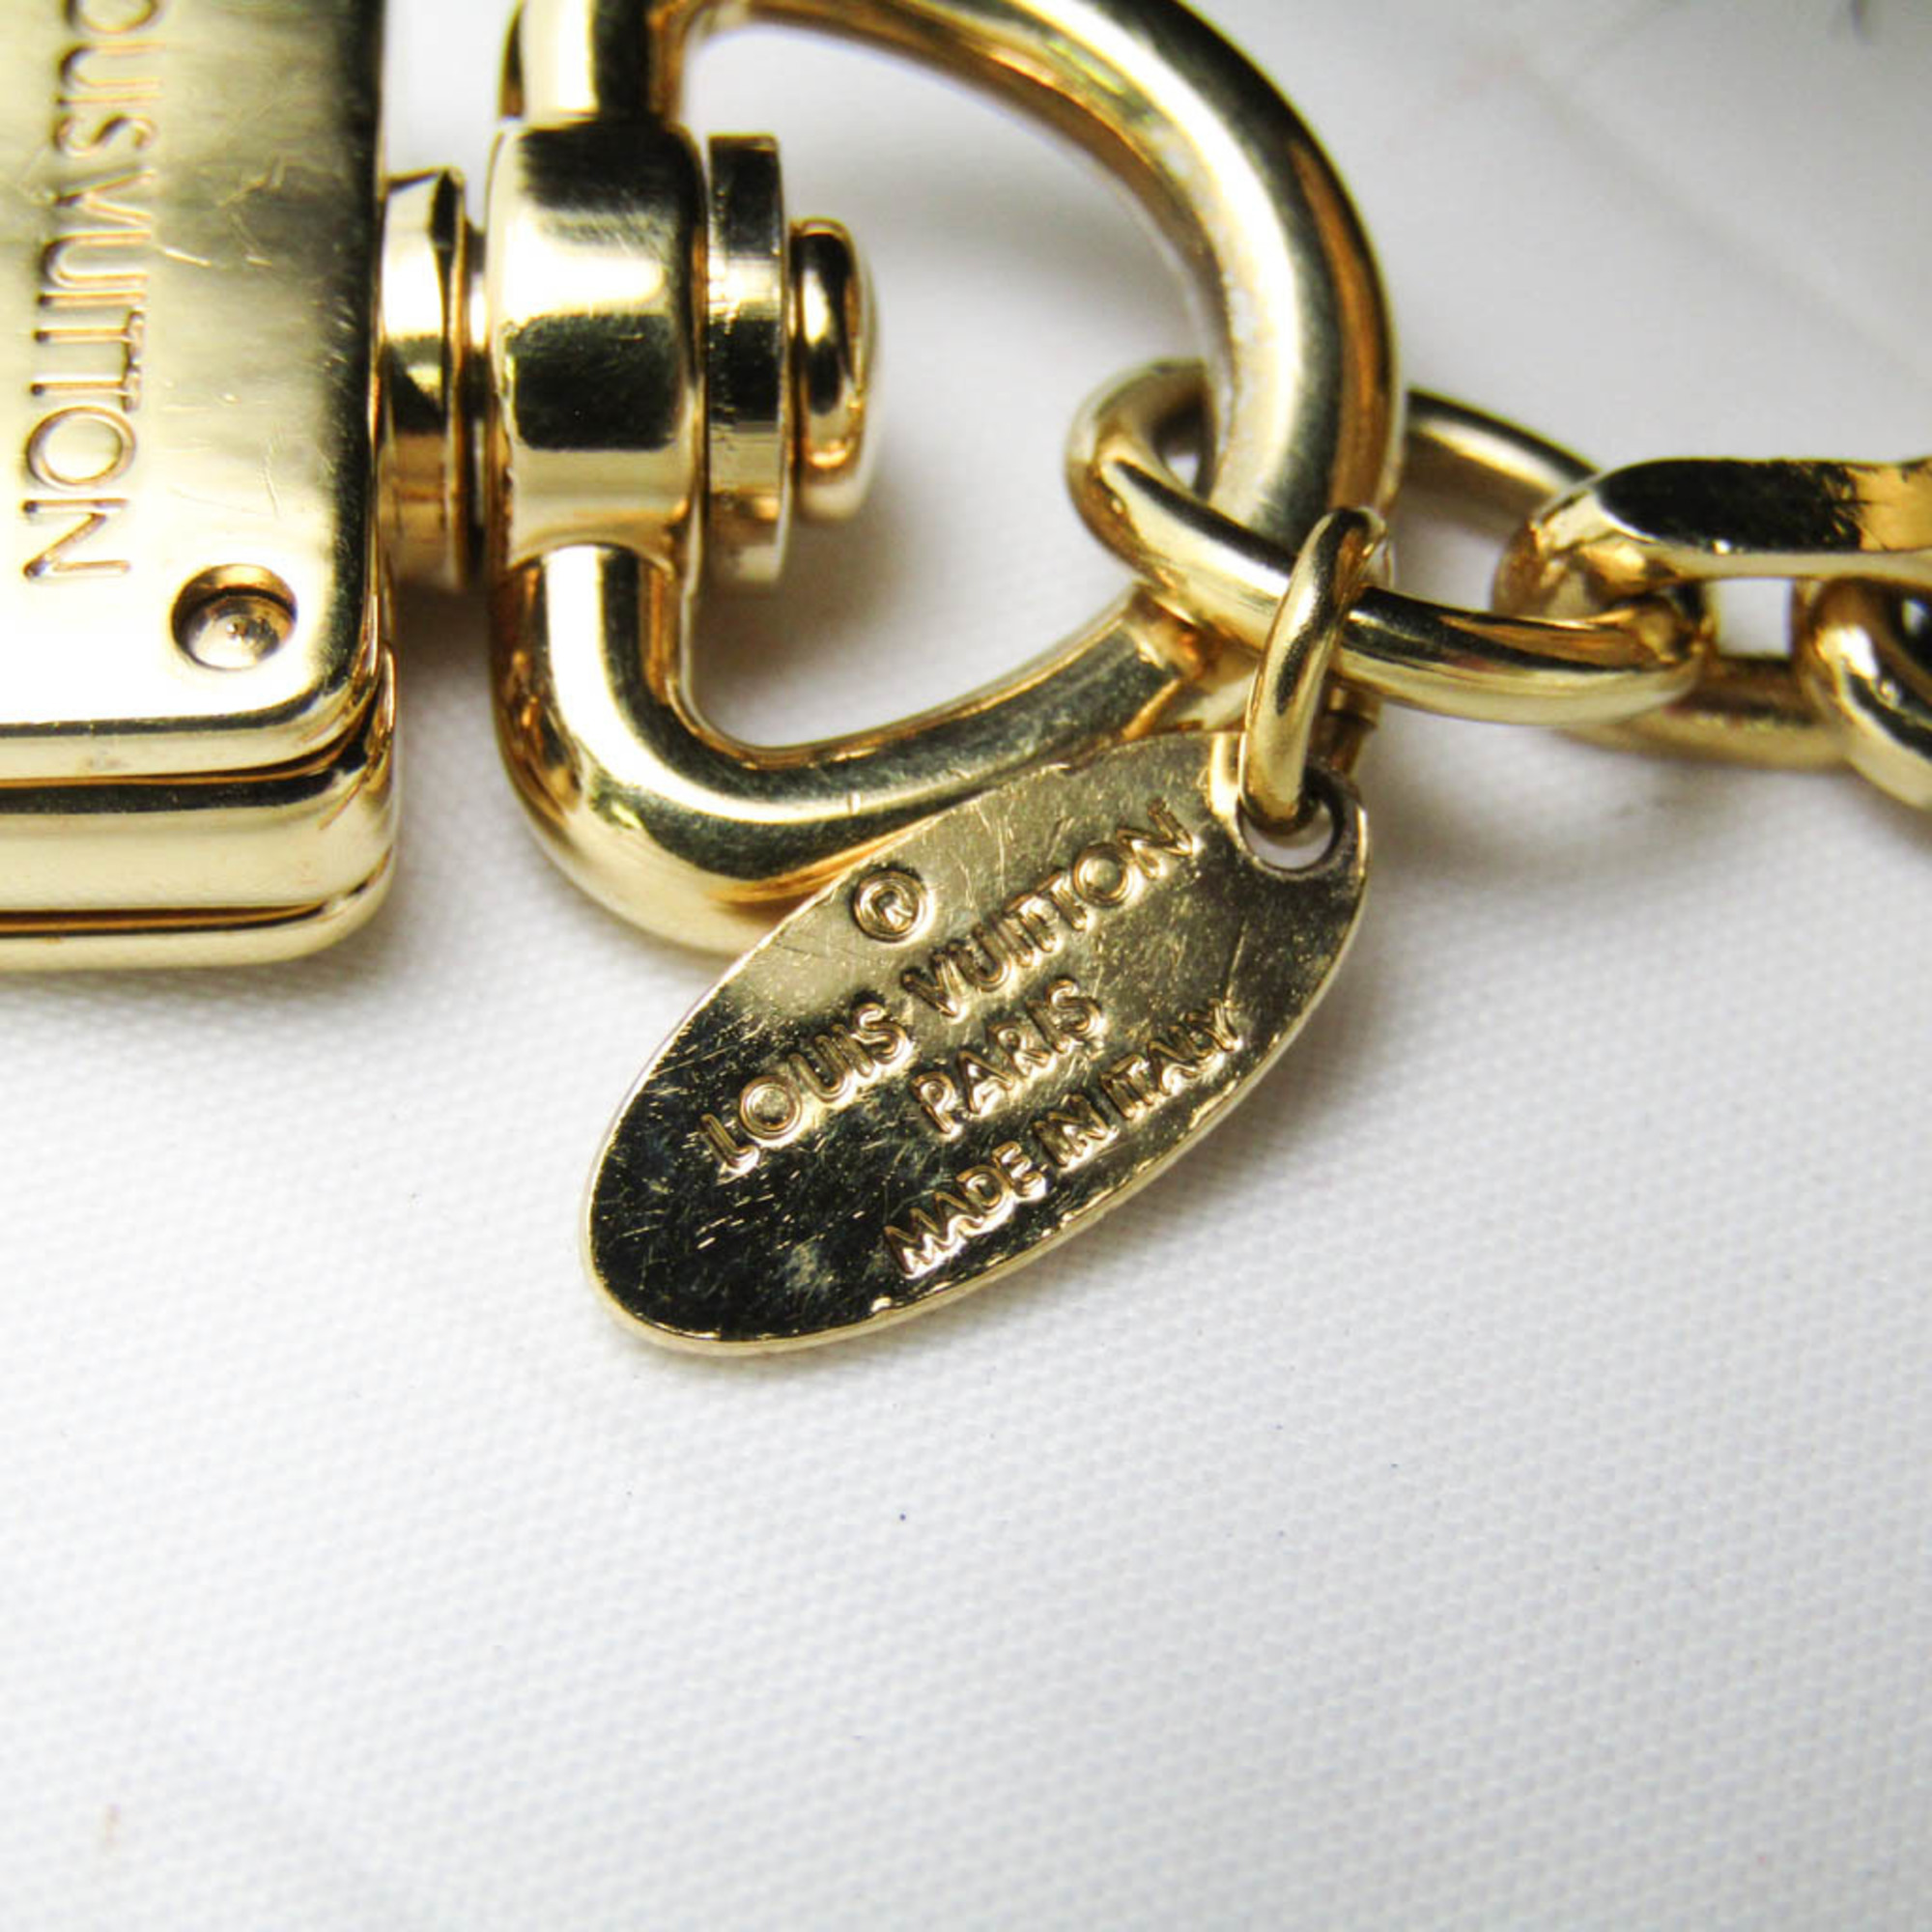 ルイ・ヴィトン(Louis Vuitton) ファー,メタル バッグチャーム ブラック,ゴールド バッグ チャーム ・ファジーバブル M67372